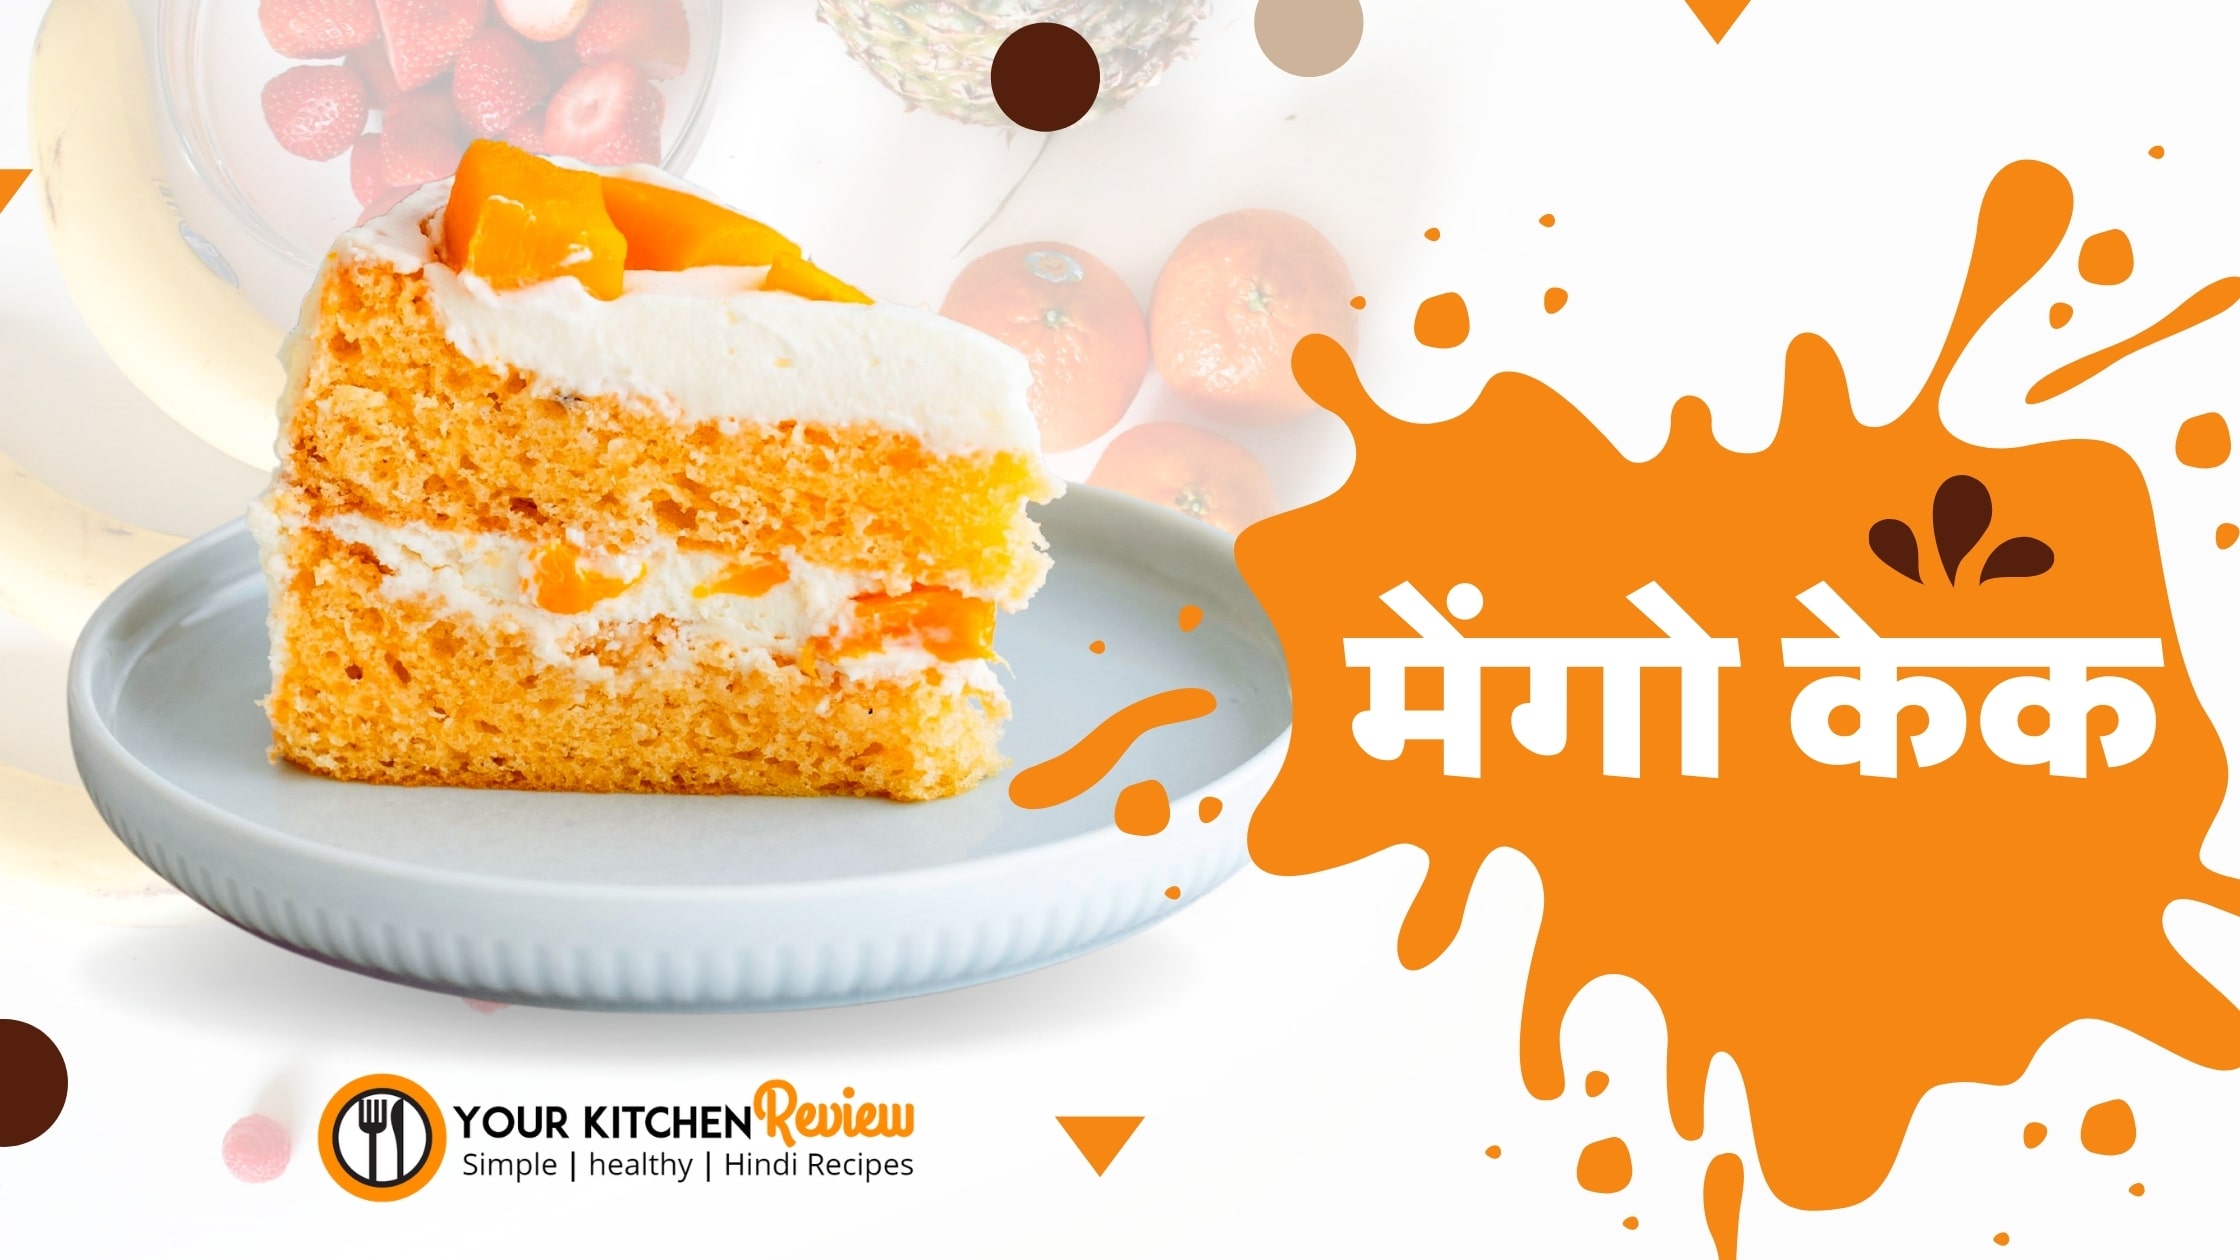 egg less mango cake recipe in Hindi - मेंगो केक की रेसिपी हिंदी में